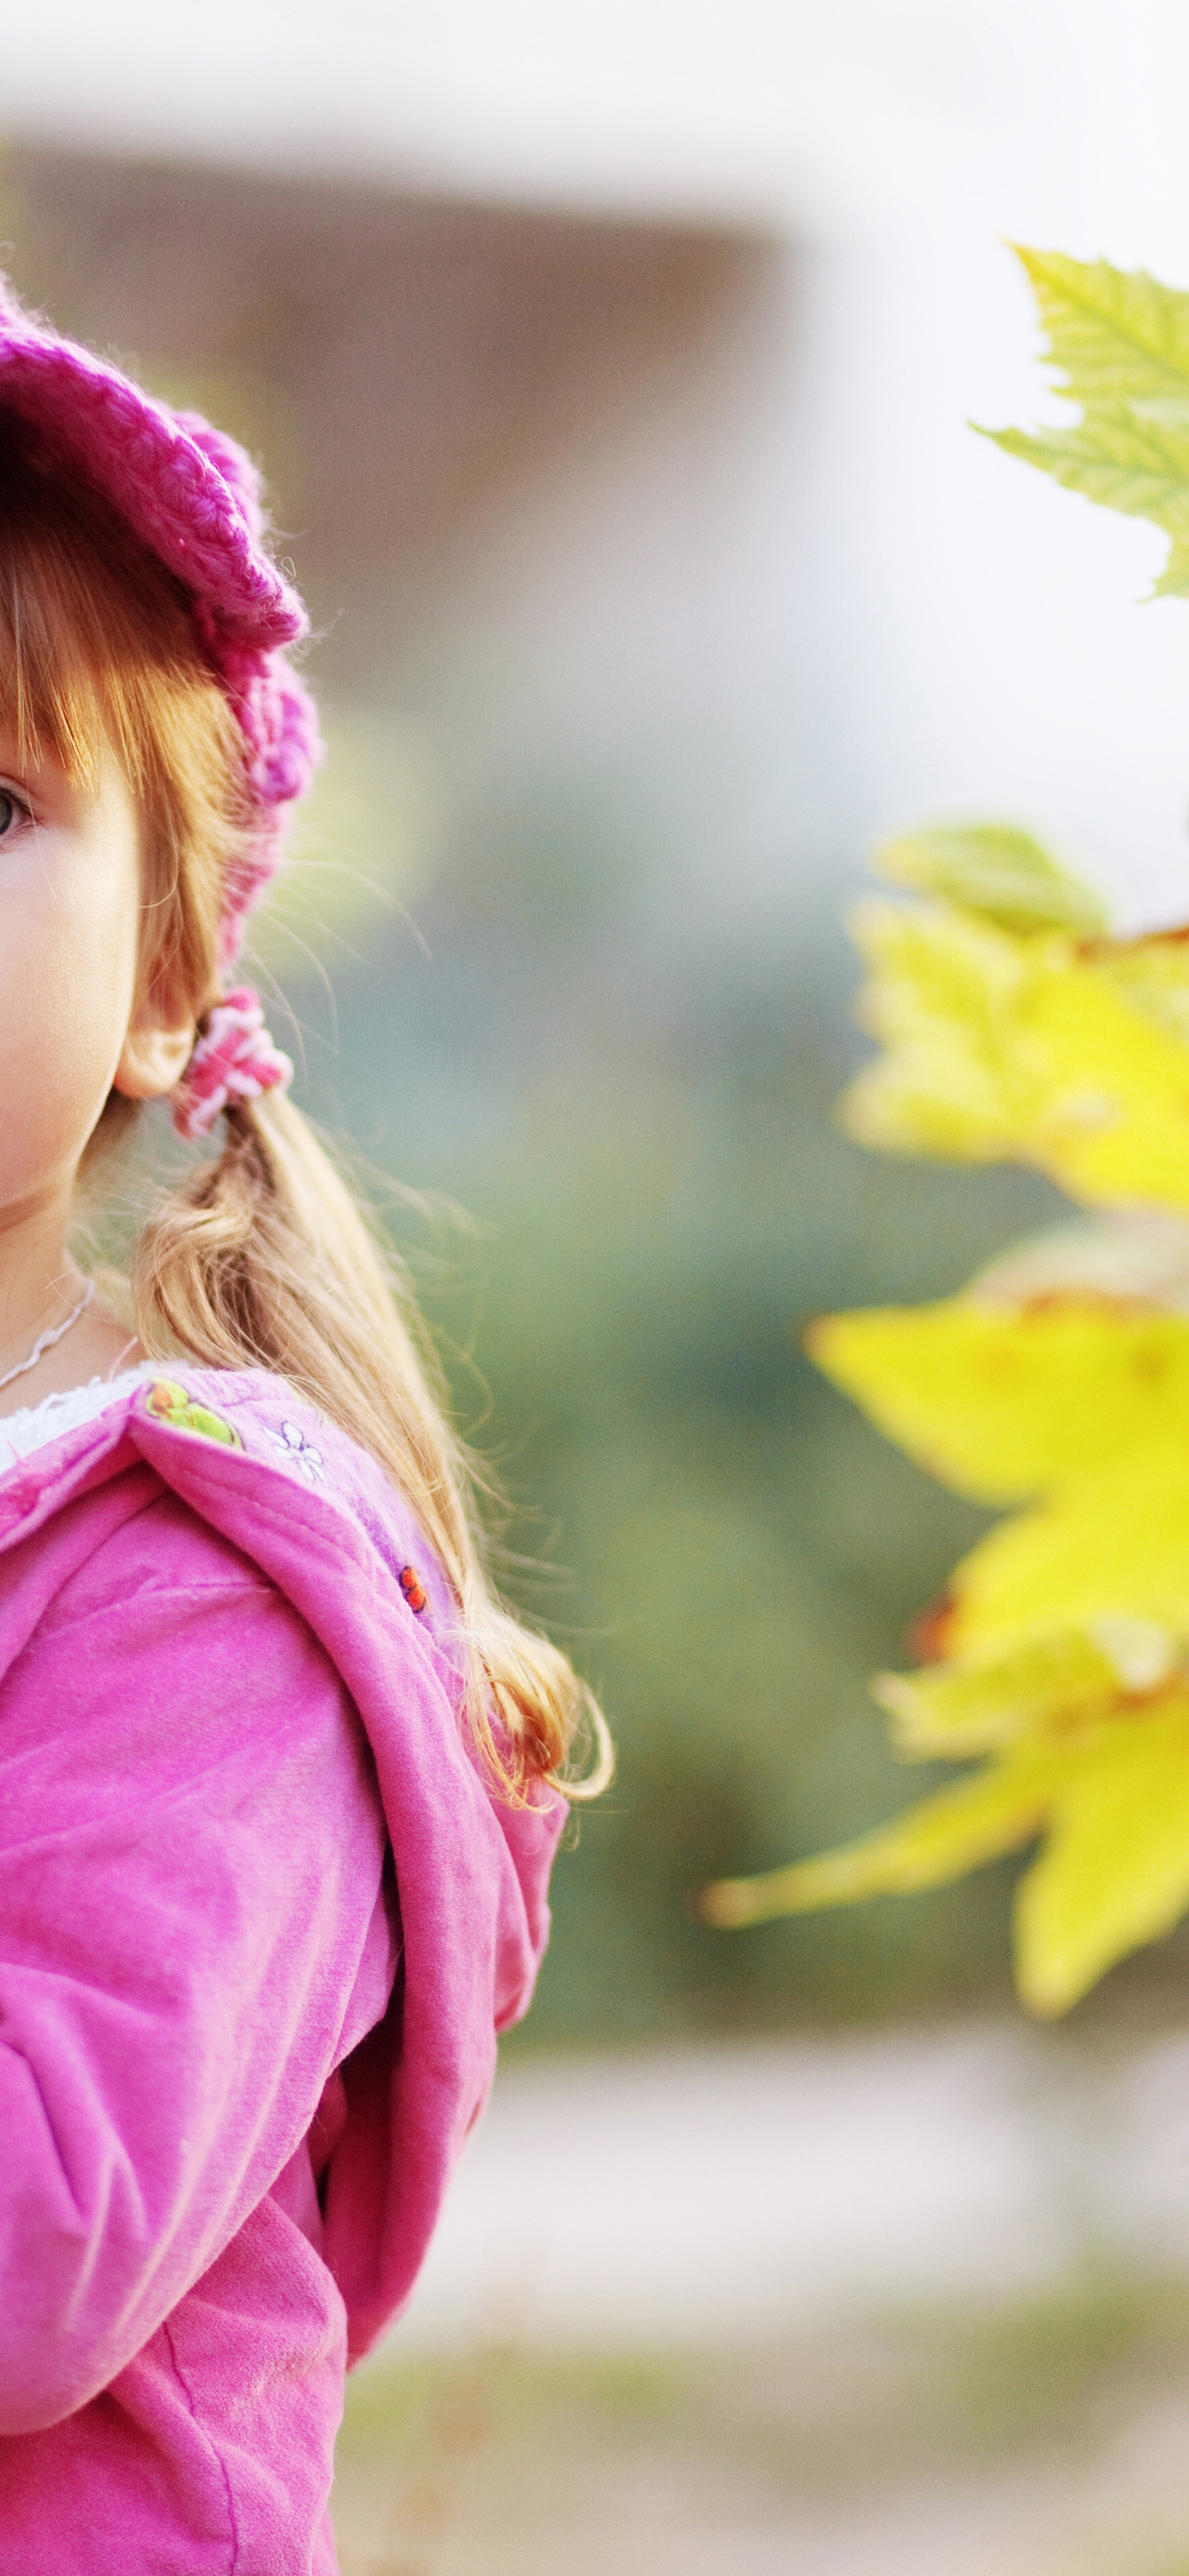 Картинка: Девочка, ребёнок, кепка, розовая, куртка, цвет, природа, осень, листья, взгляд